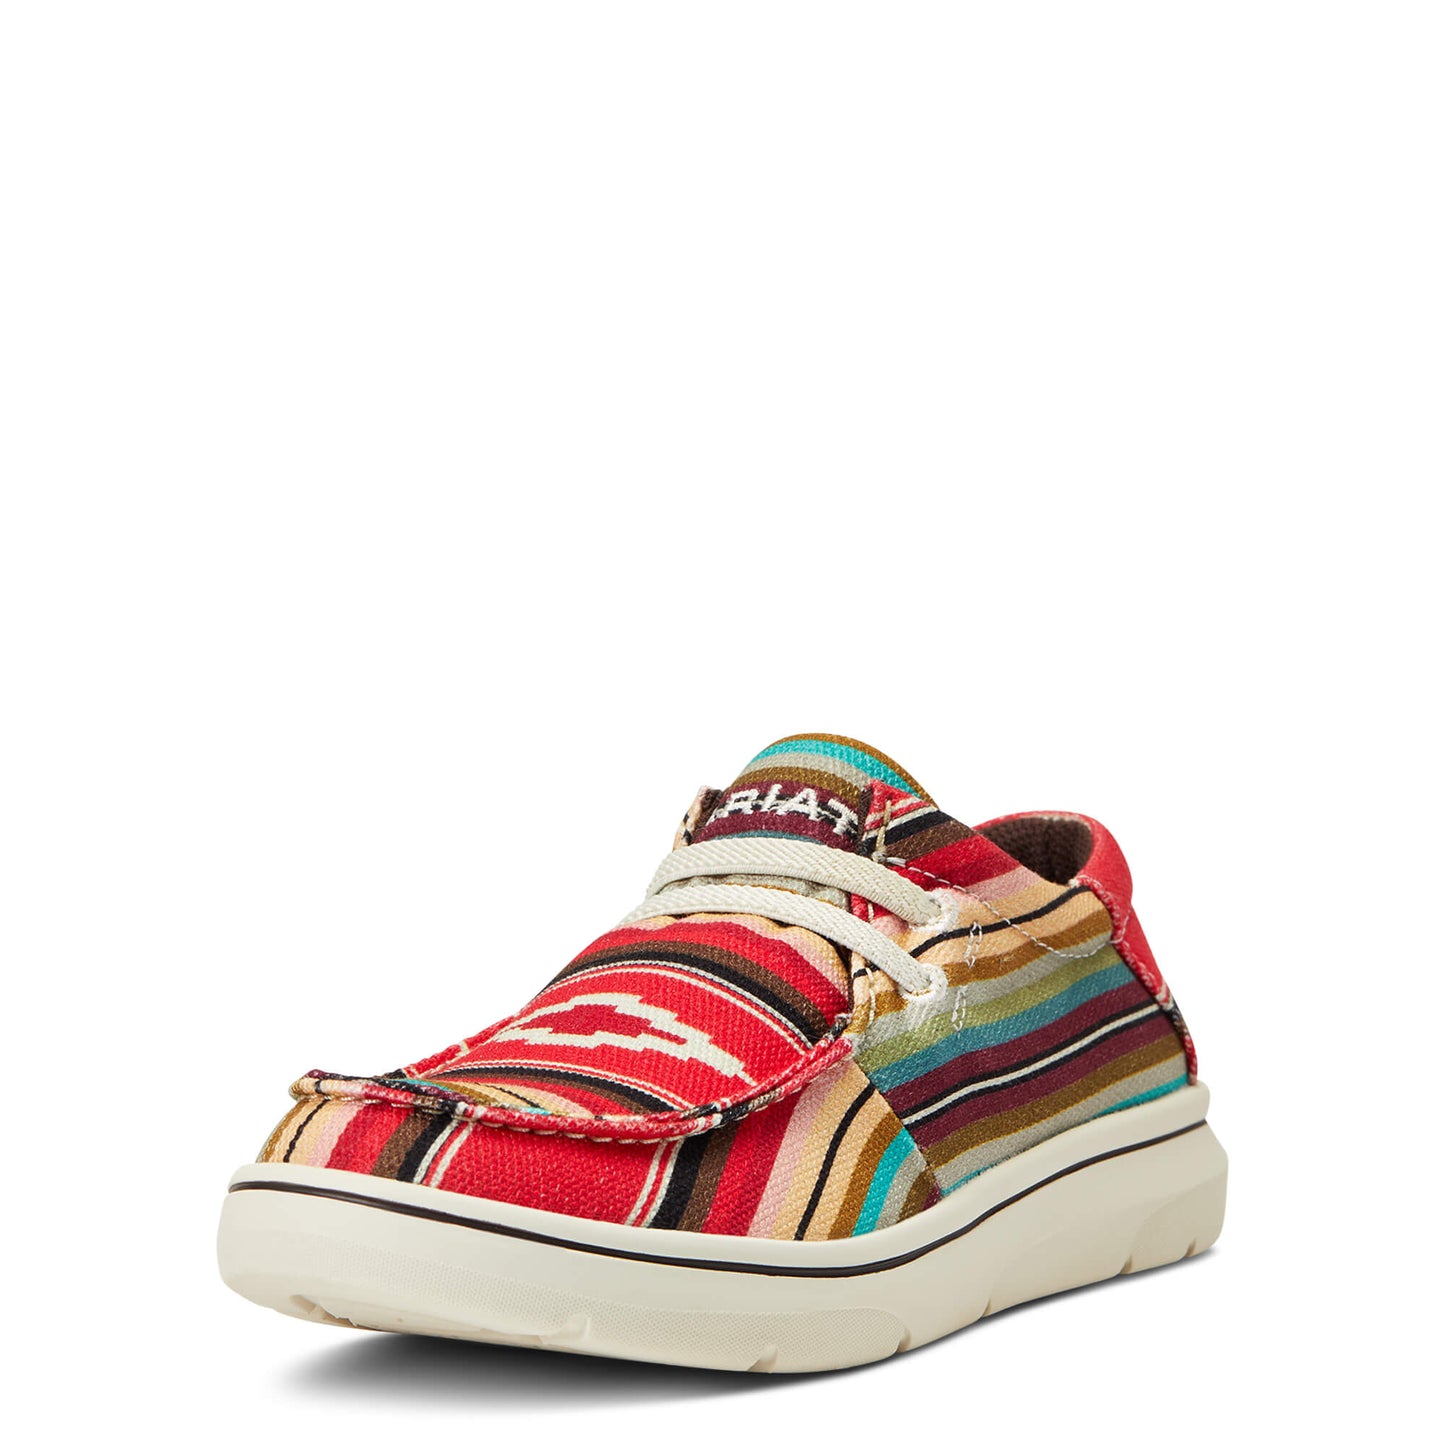 Ariat Kids Hilo Pastel Lace Shoes - Aztec Print 10040252